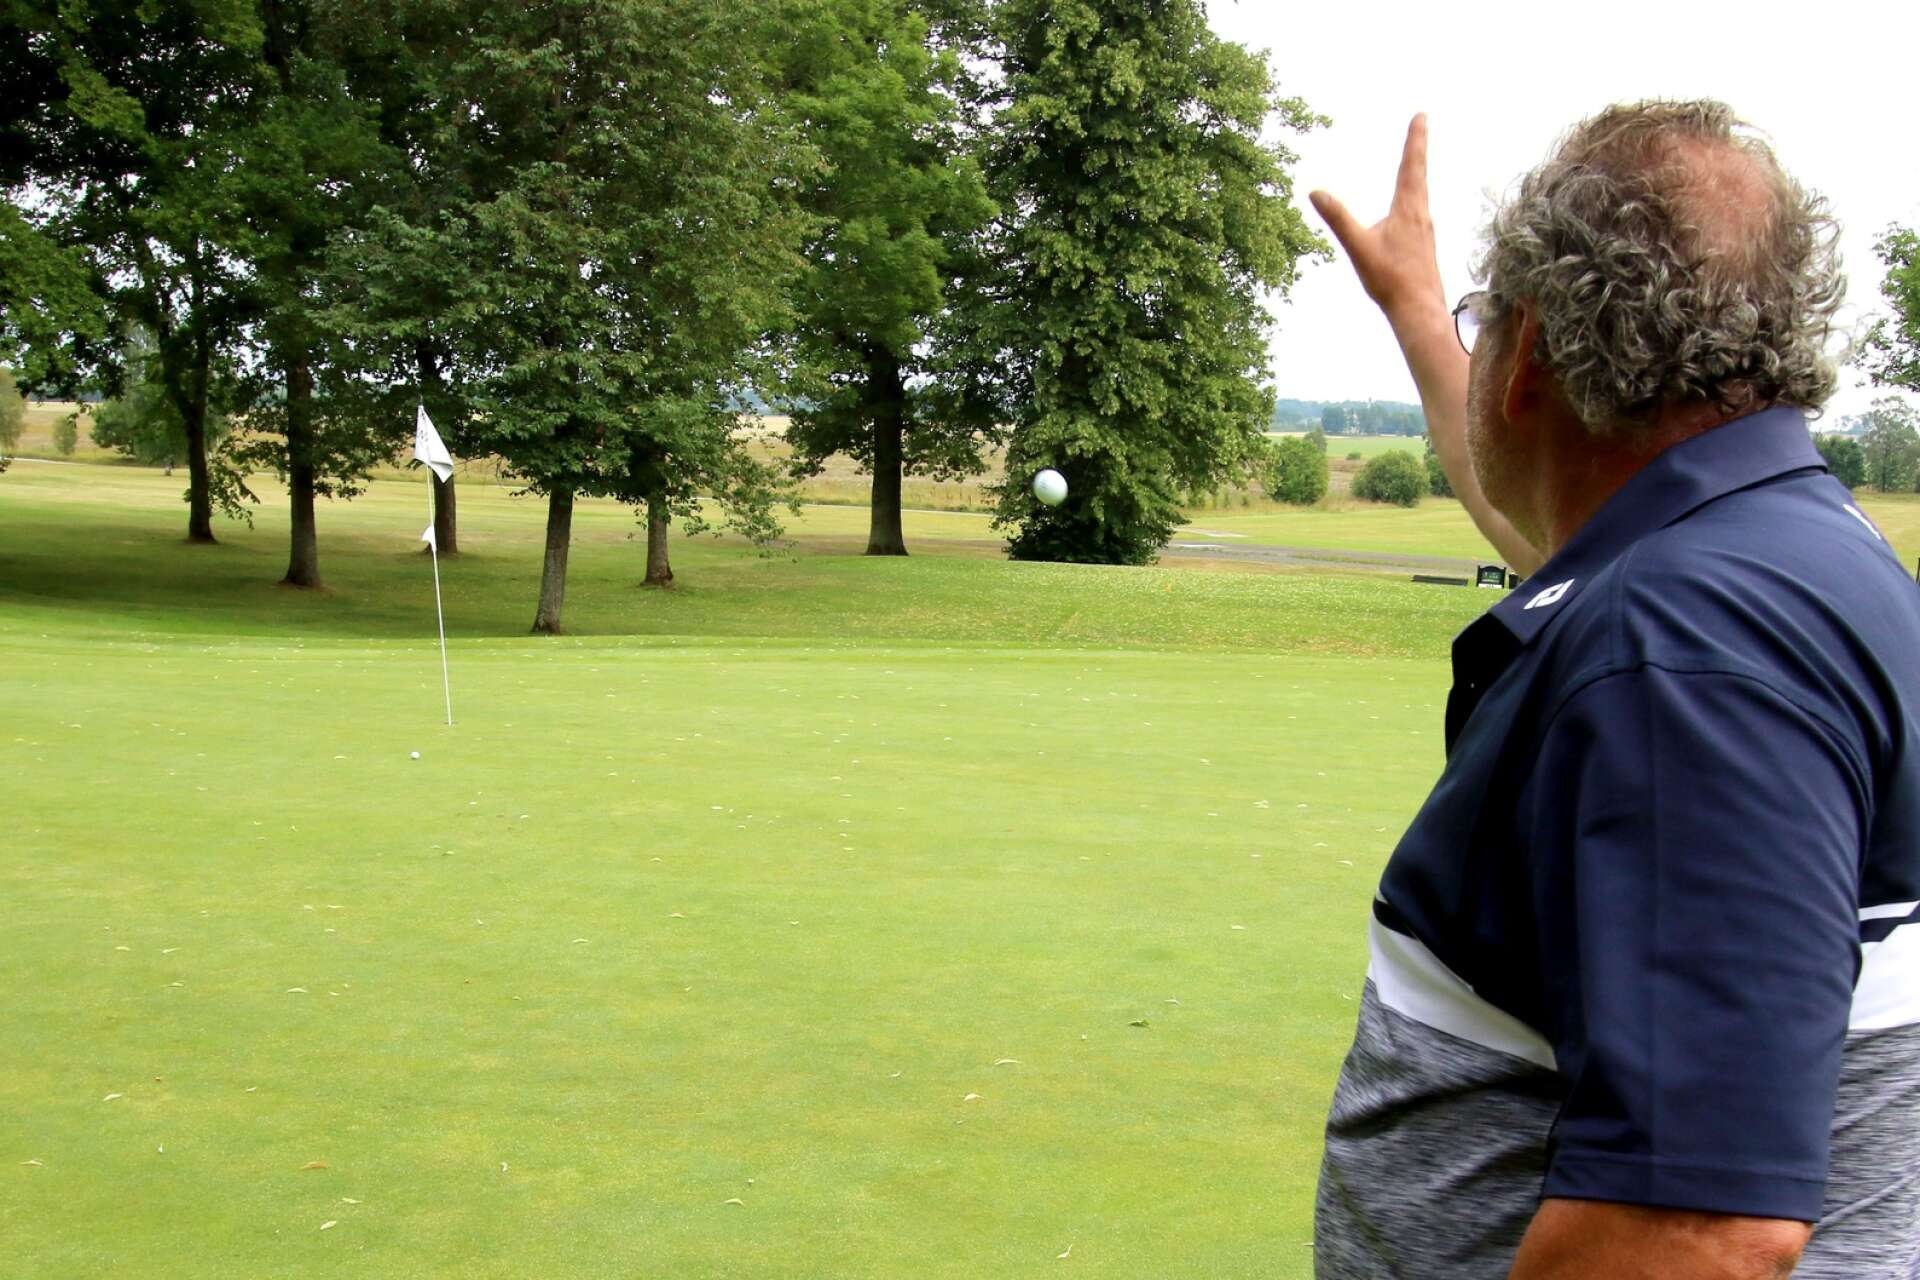 Kast med liten boll, Steffo visar takterna med nya regler om hur golf kan spelas.